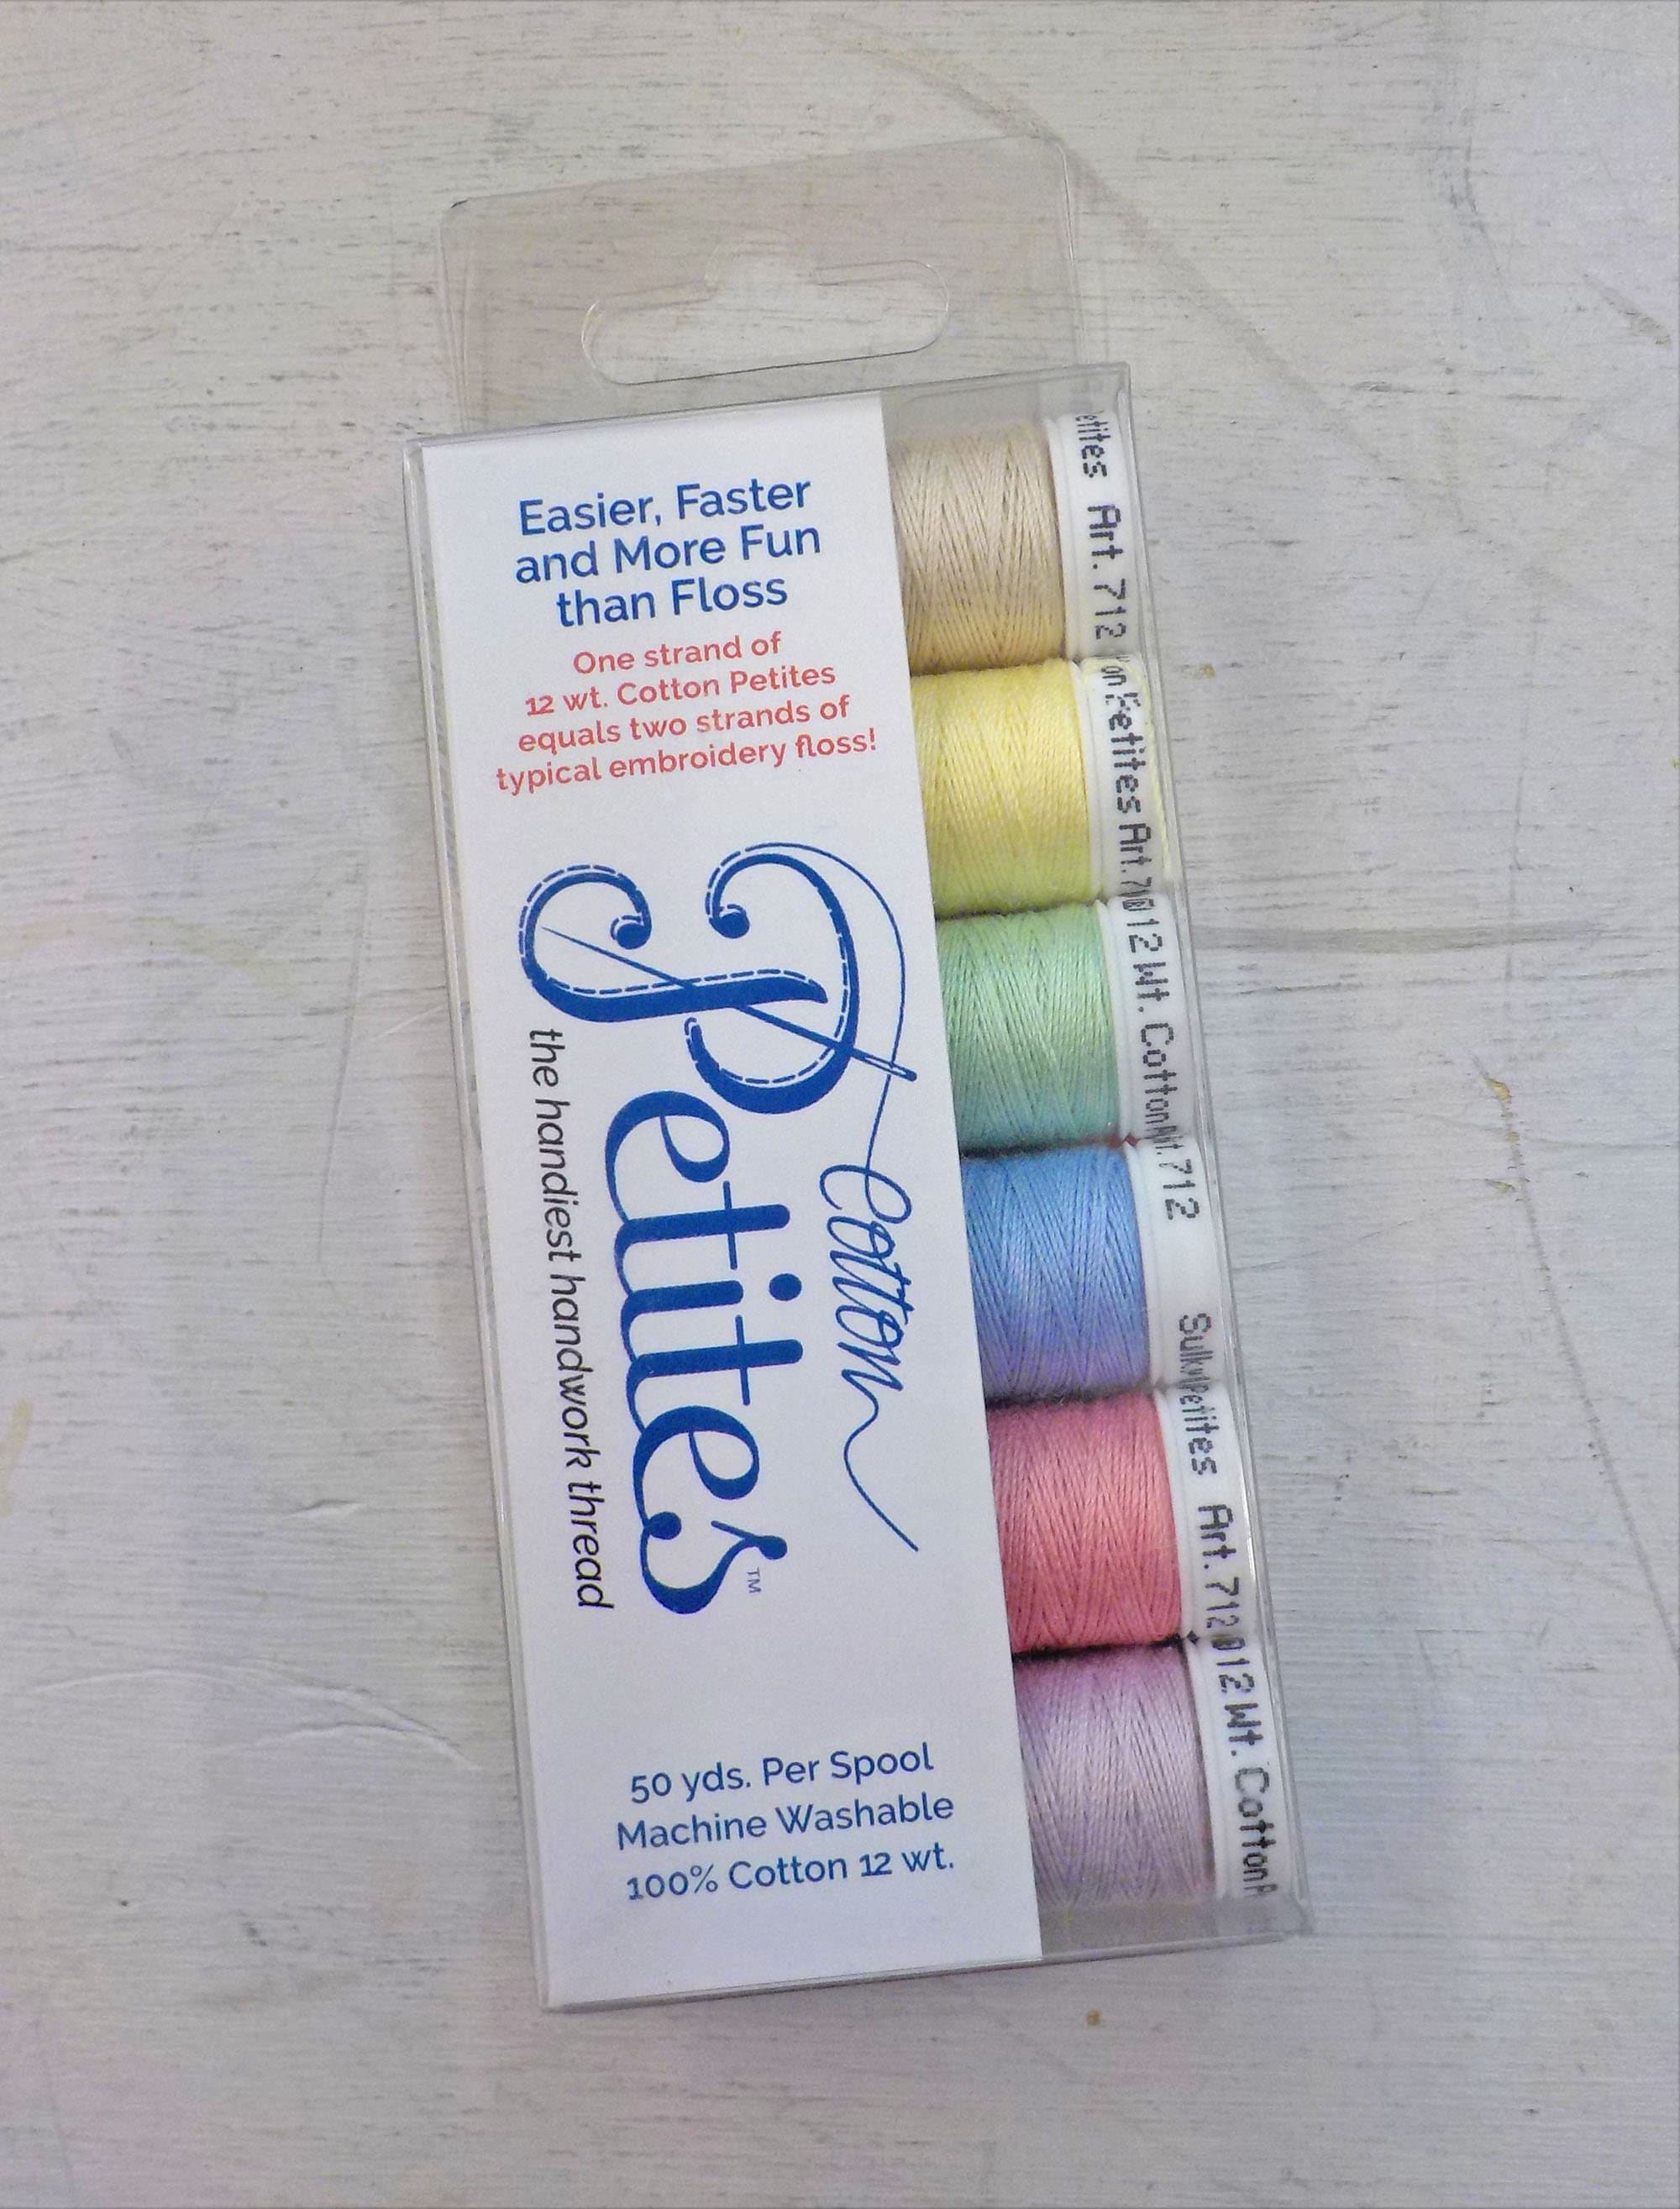 Sulky 12 Wt. Cotton Thread - Black- 300 yd. Spool